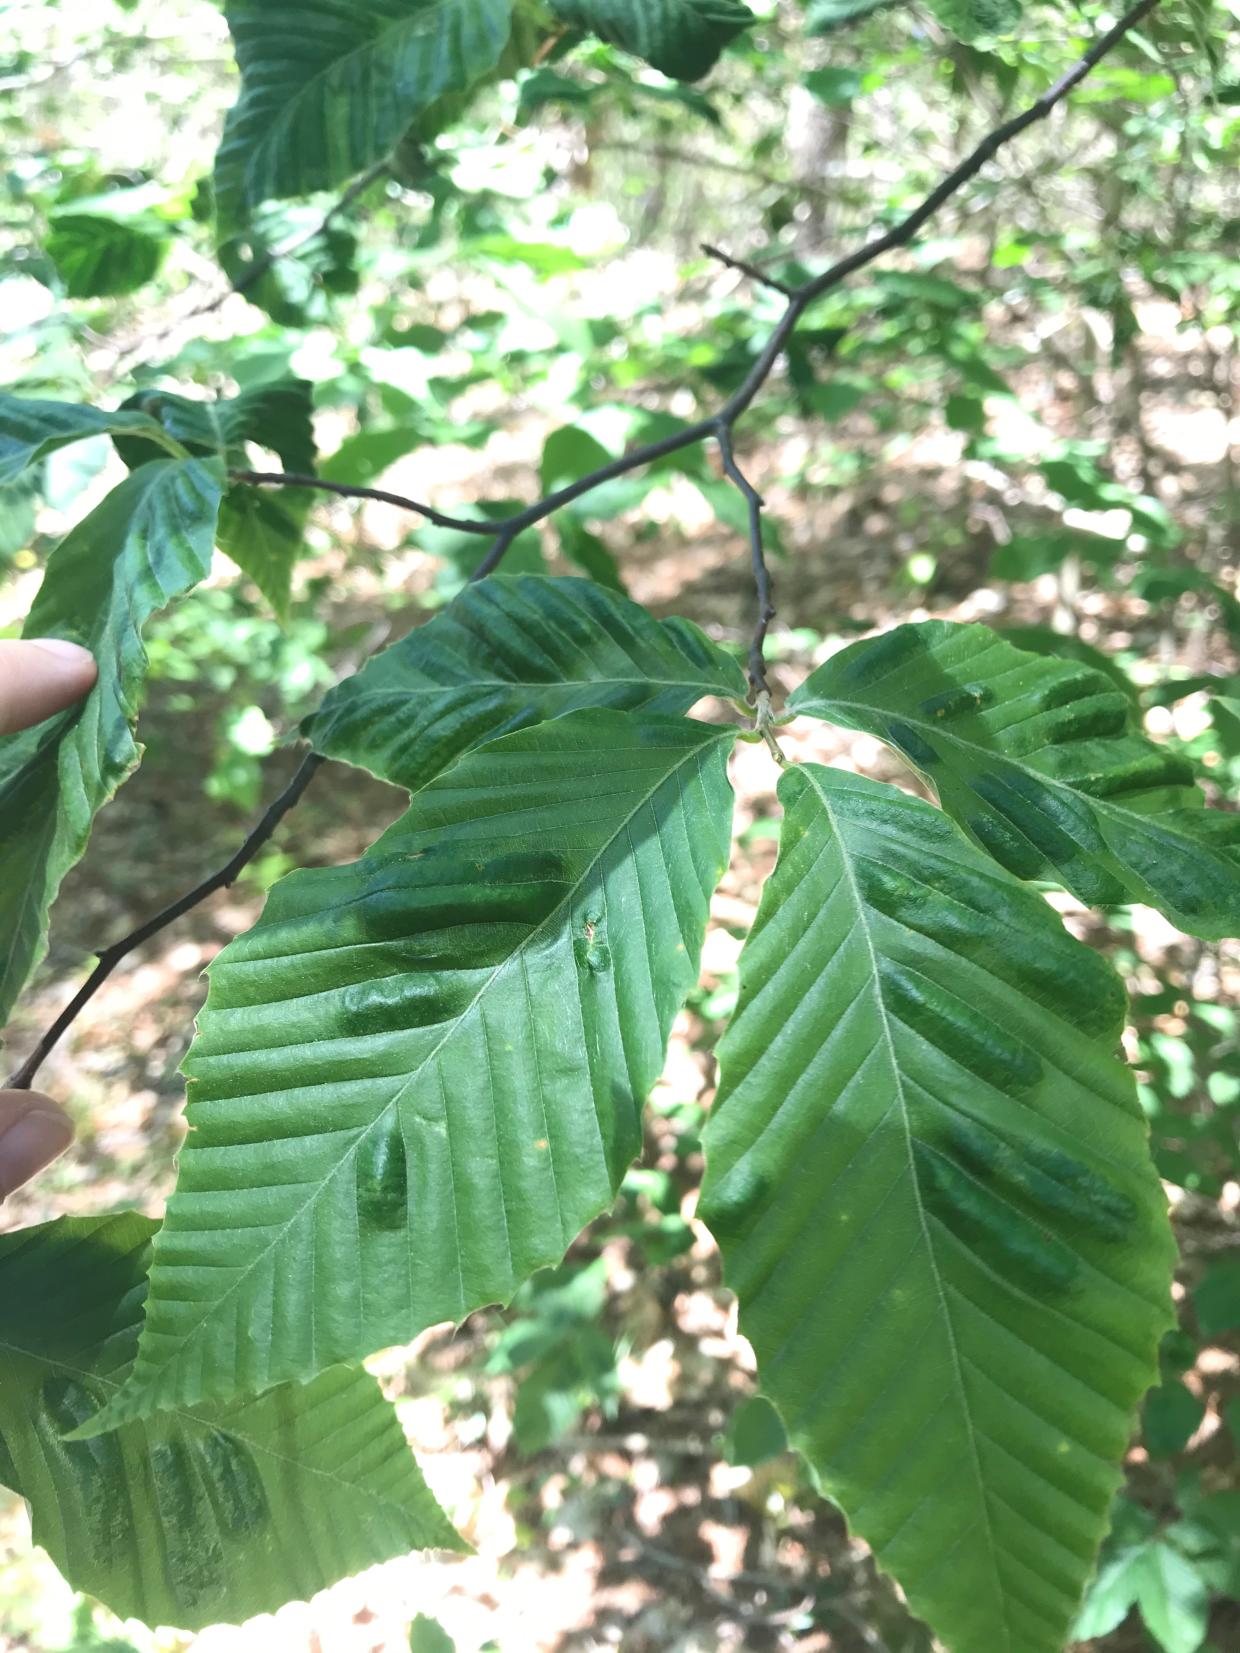 Symptomatic leaves of Beech Leaf Disease